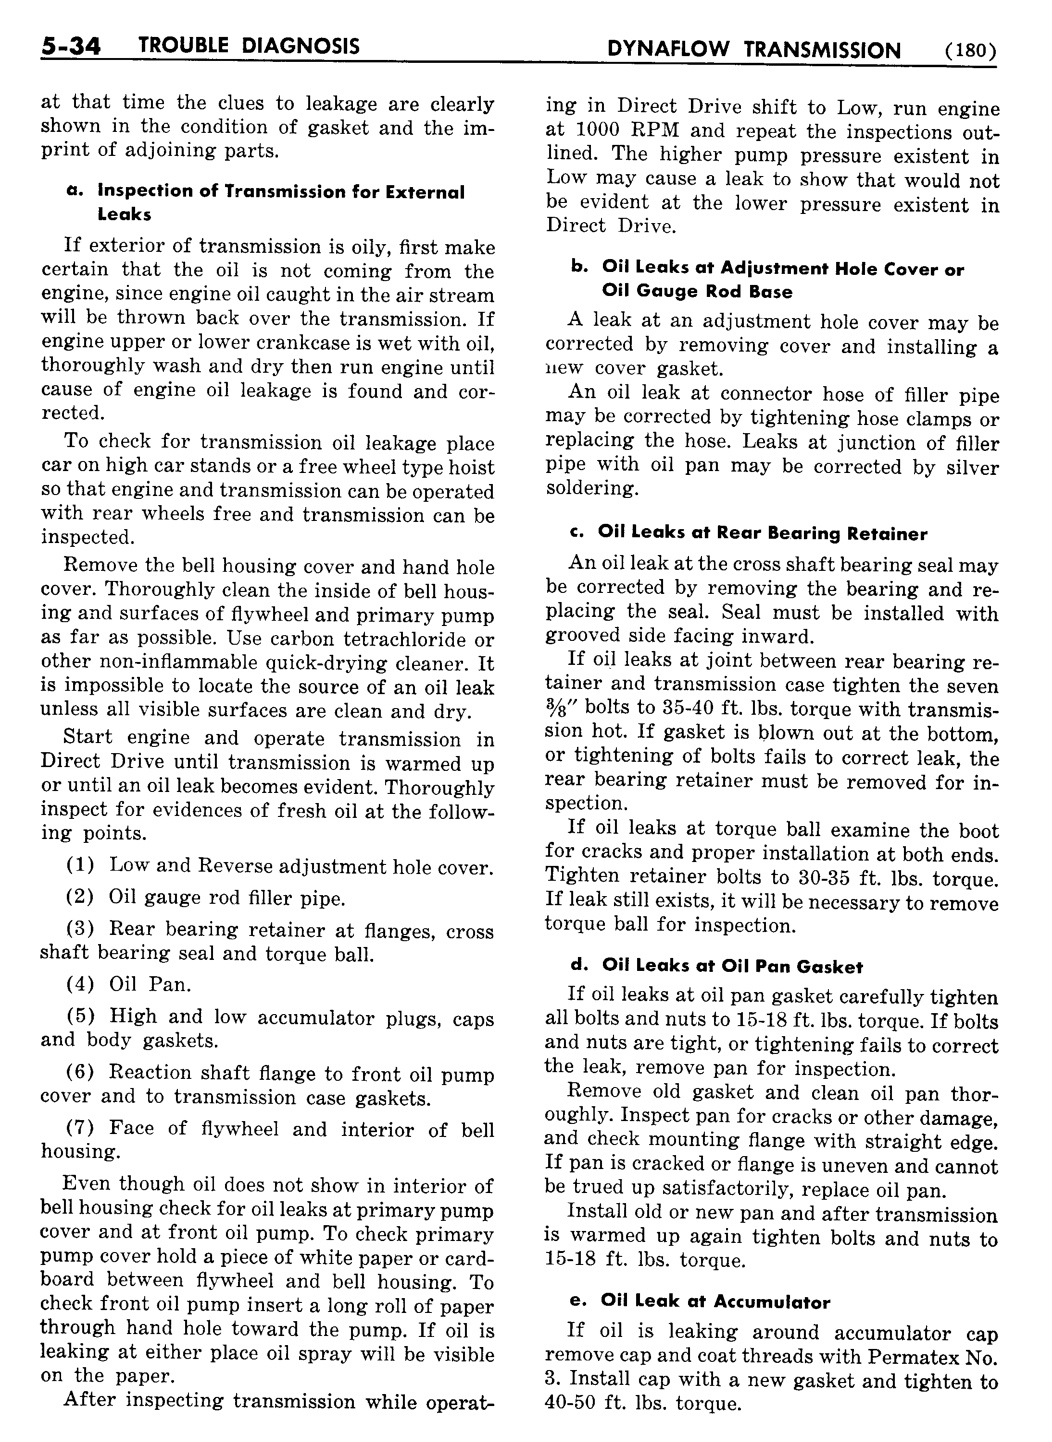 n_06 1956 Buick Shop Manual - Dynaflow-034-034.jpg